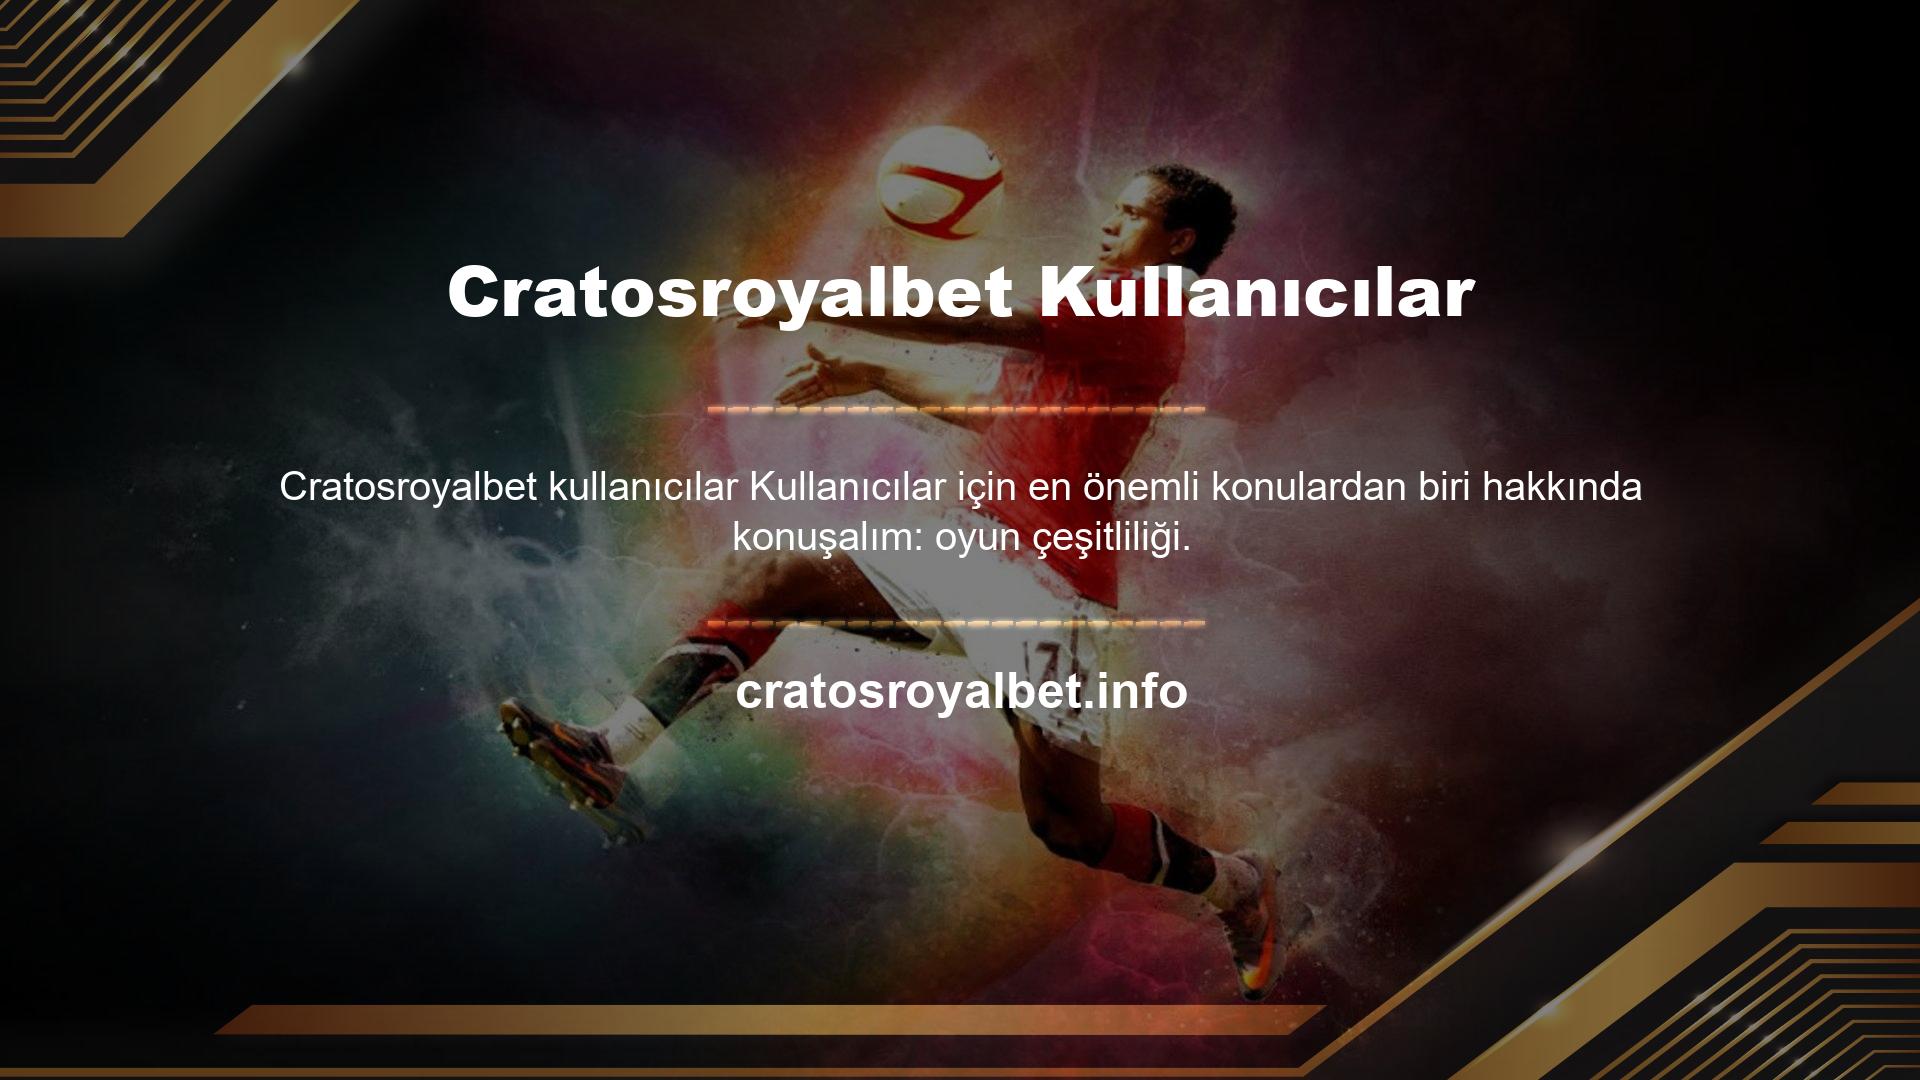 Birçok bahis sitesine göre Cratosroyalbet bahis, bahis ve oyun seçenekleri ile dikkat çeken sitelerden biridir